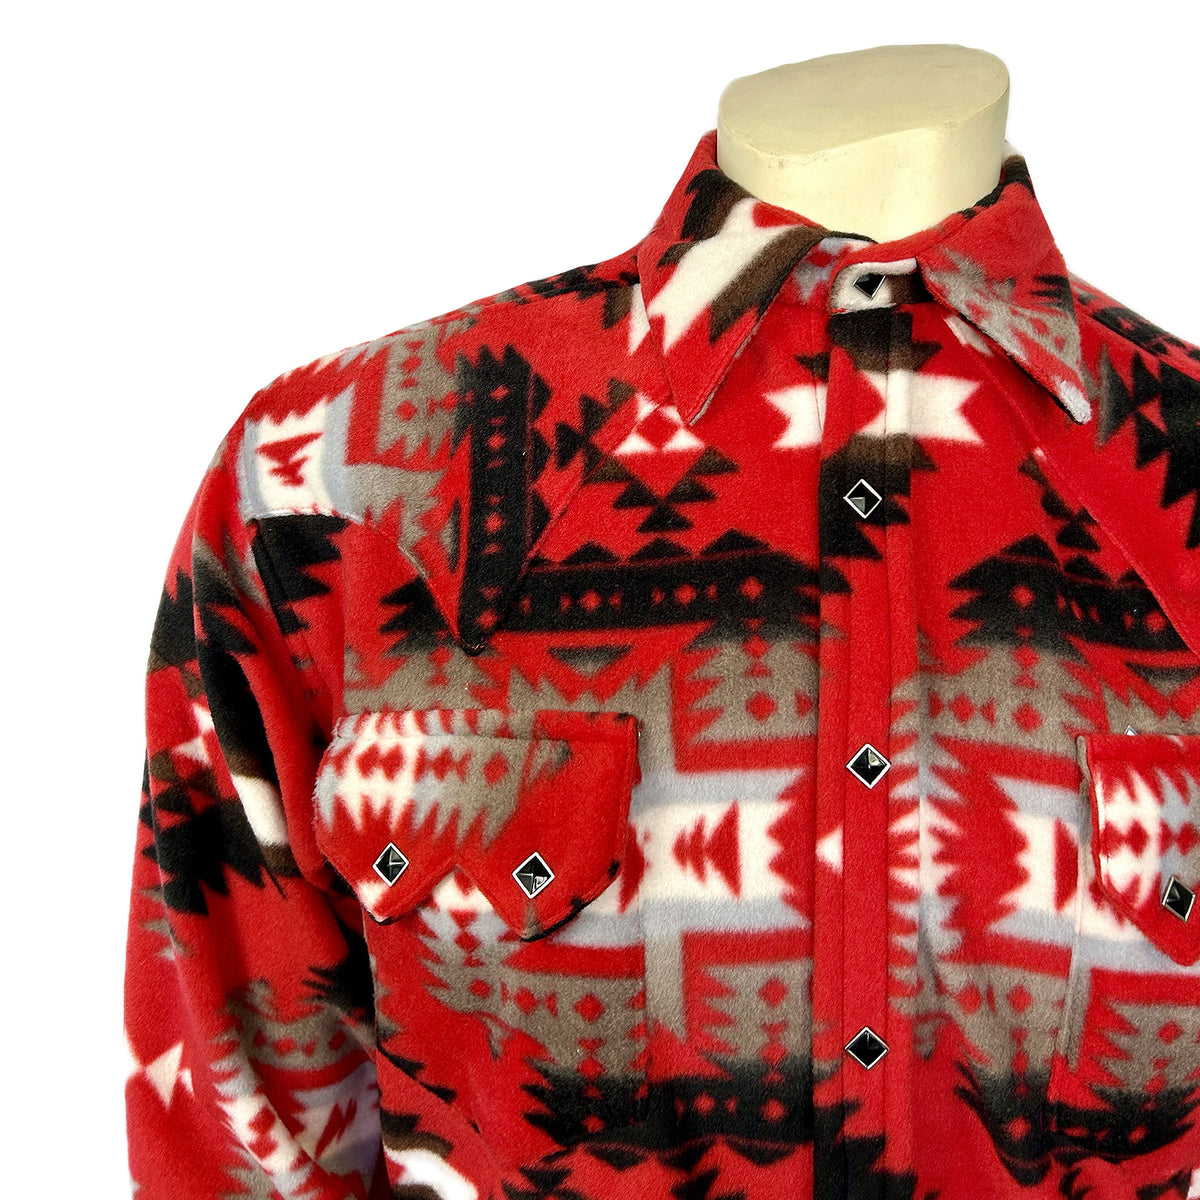 Men's Native Pattern Fleece Western Shirt in Red & Grey